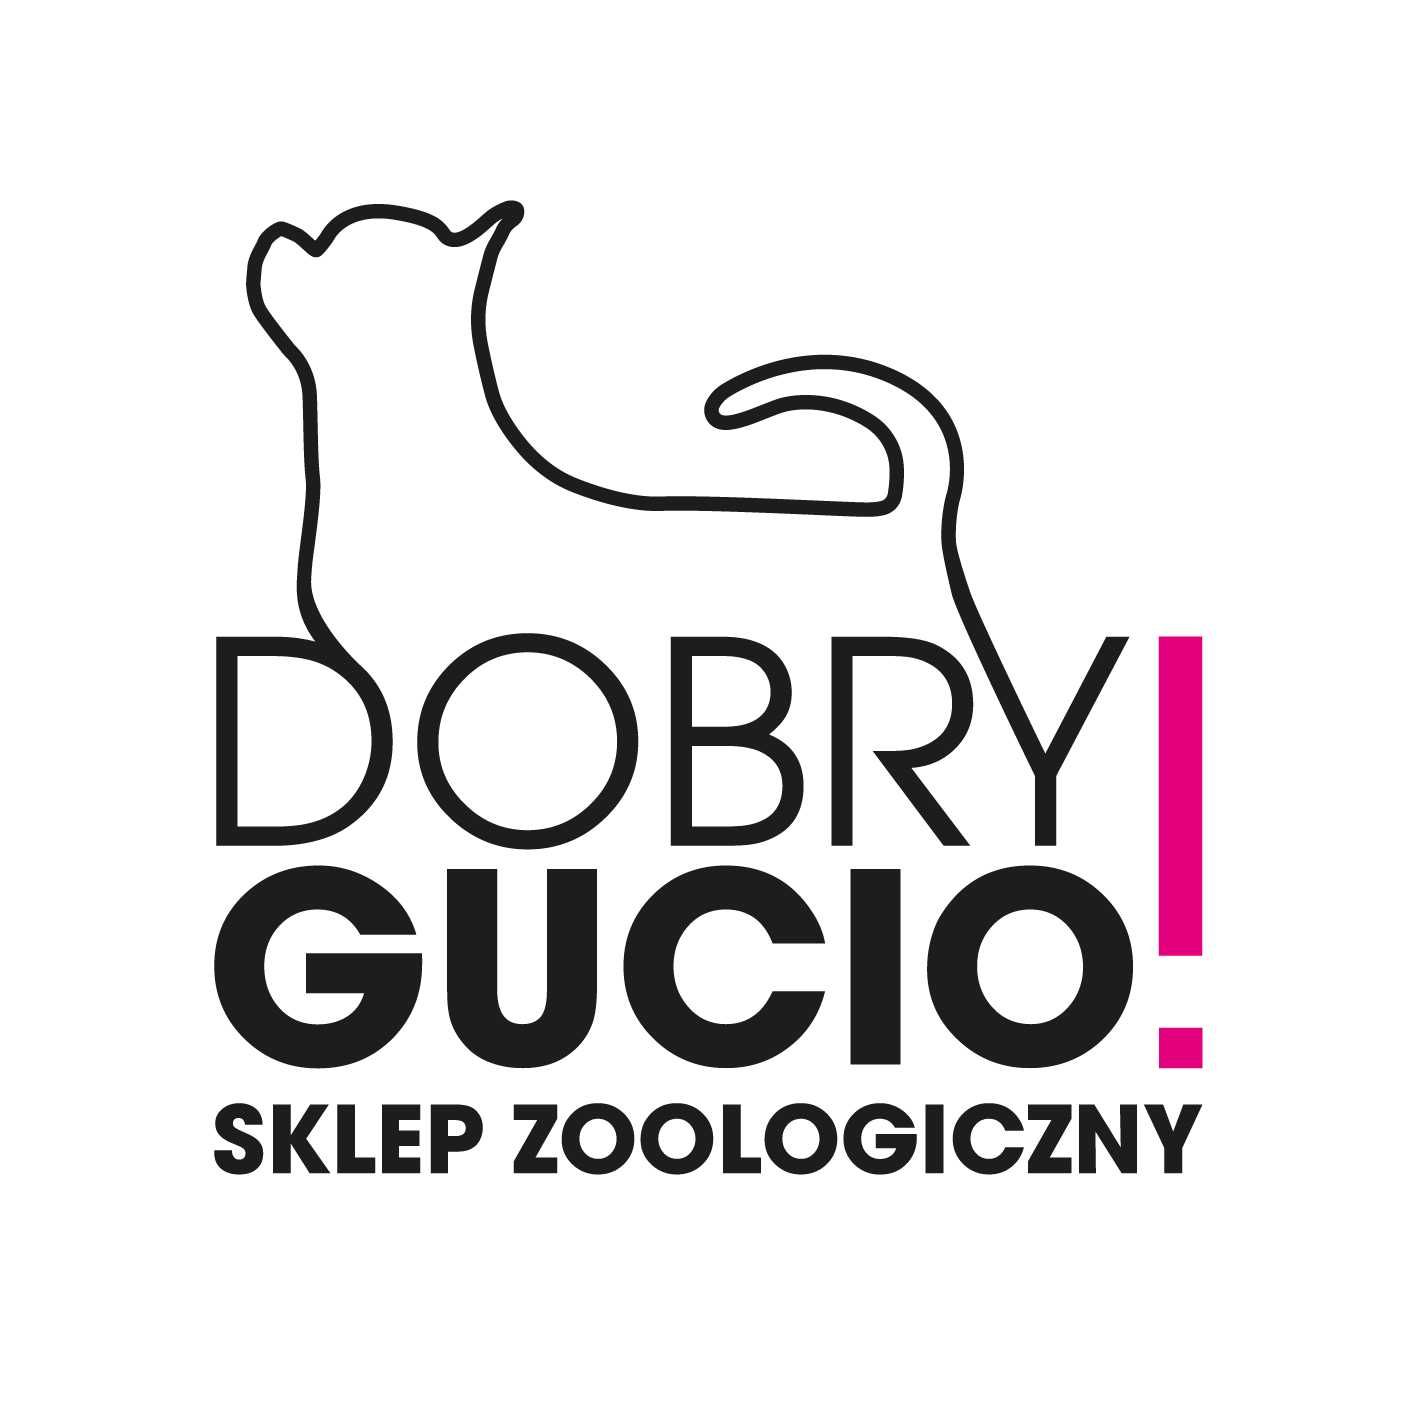 Świnka Morska Białystok sklep zoologiczny DOBRY GUCIO